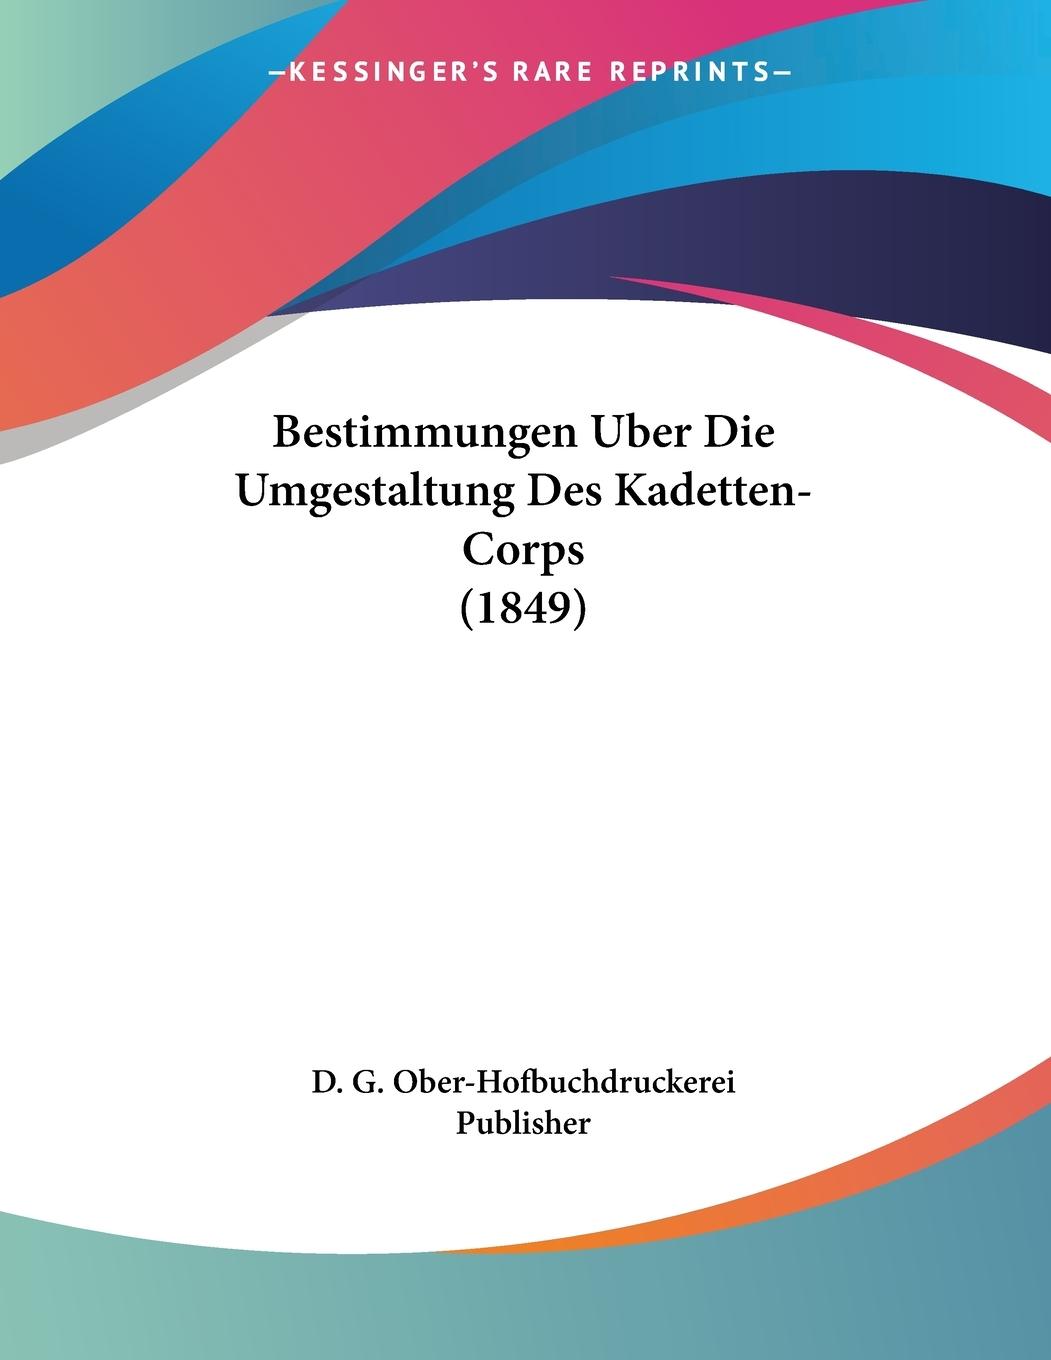 Bestimmungen Uber Die Umgestaltung Des Kadetten-Corps (1849) - D. G. Ober-Hofbuchdruckerei Publisher